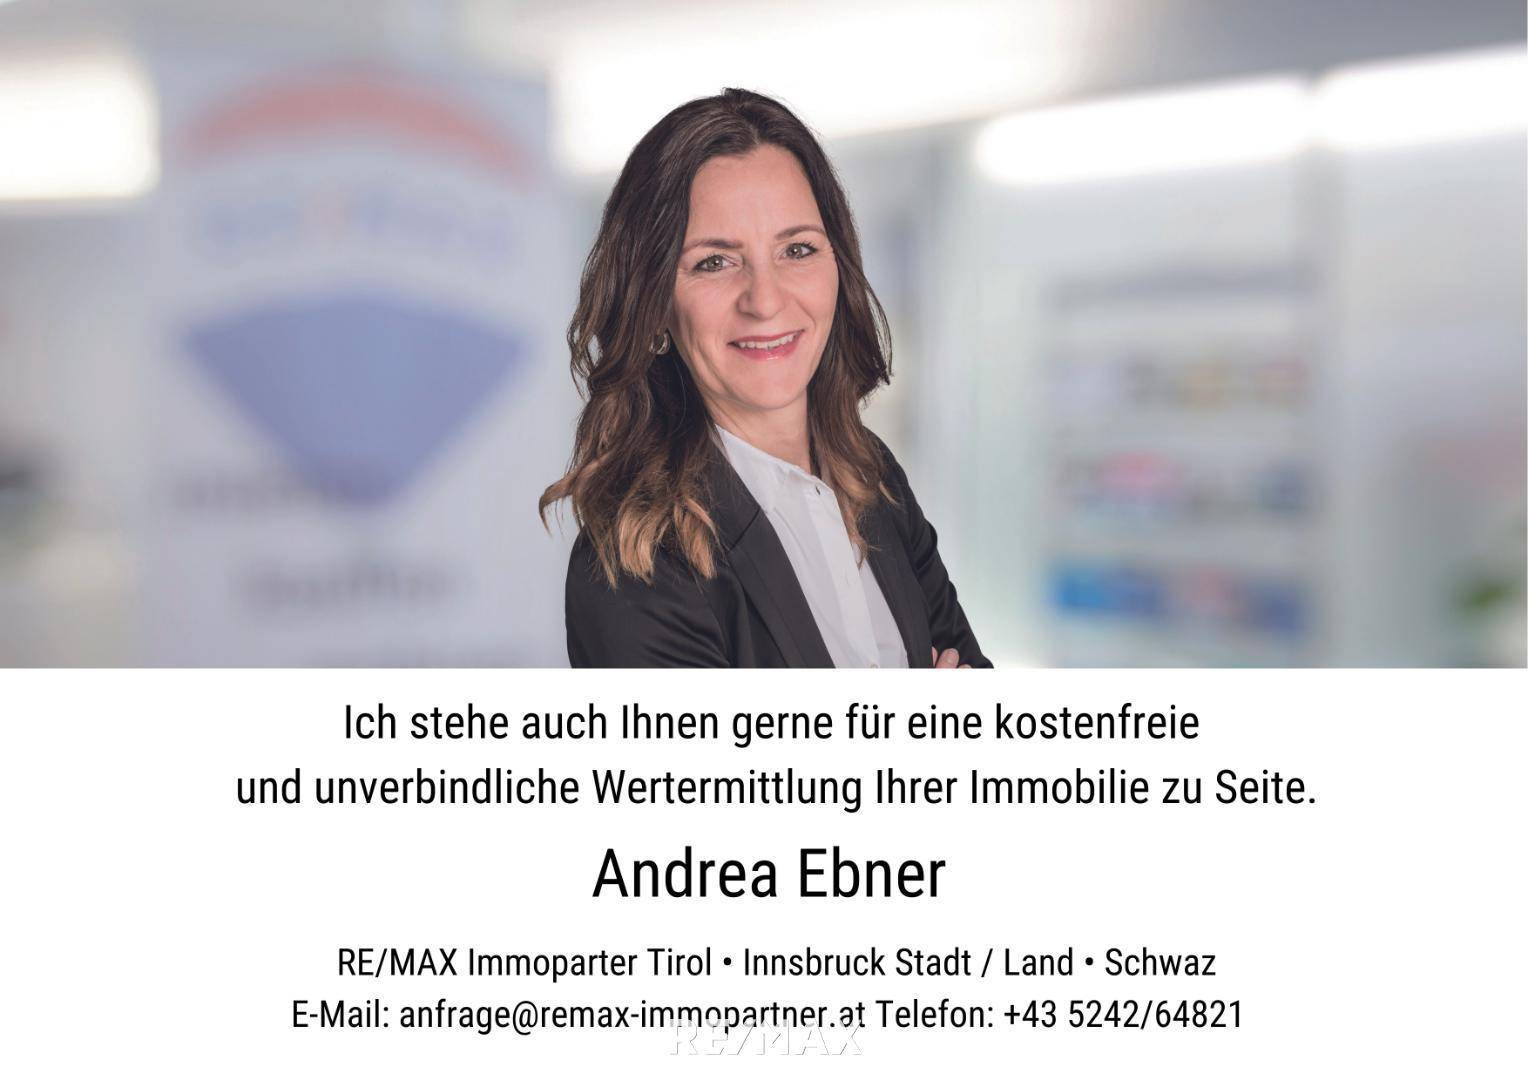 Andrea Ebner#remaximmopartner